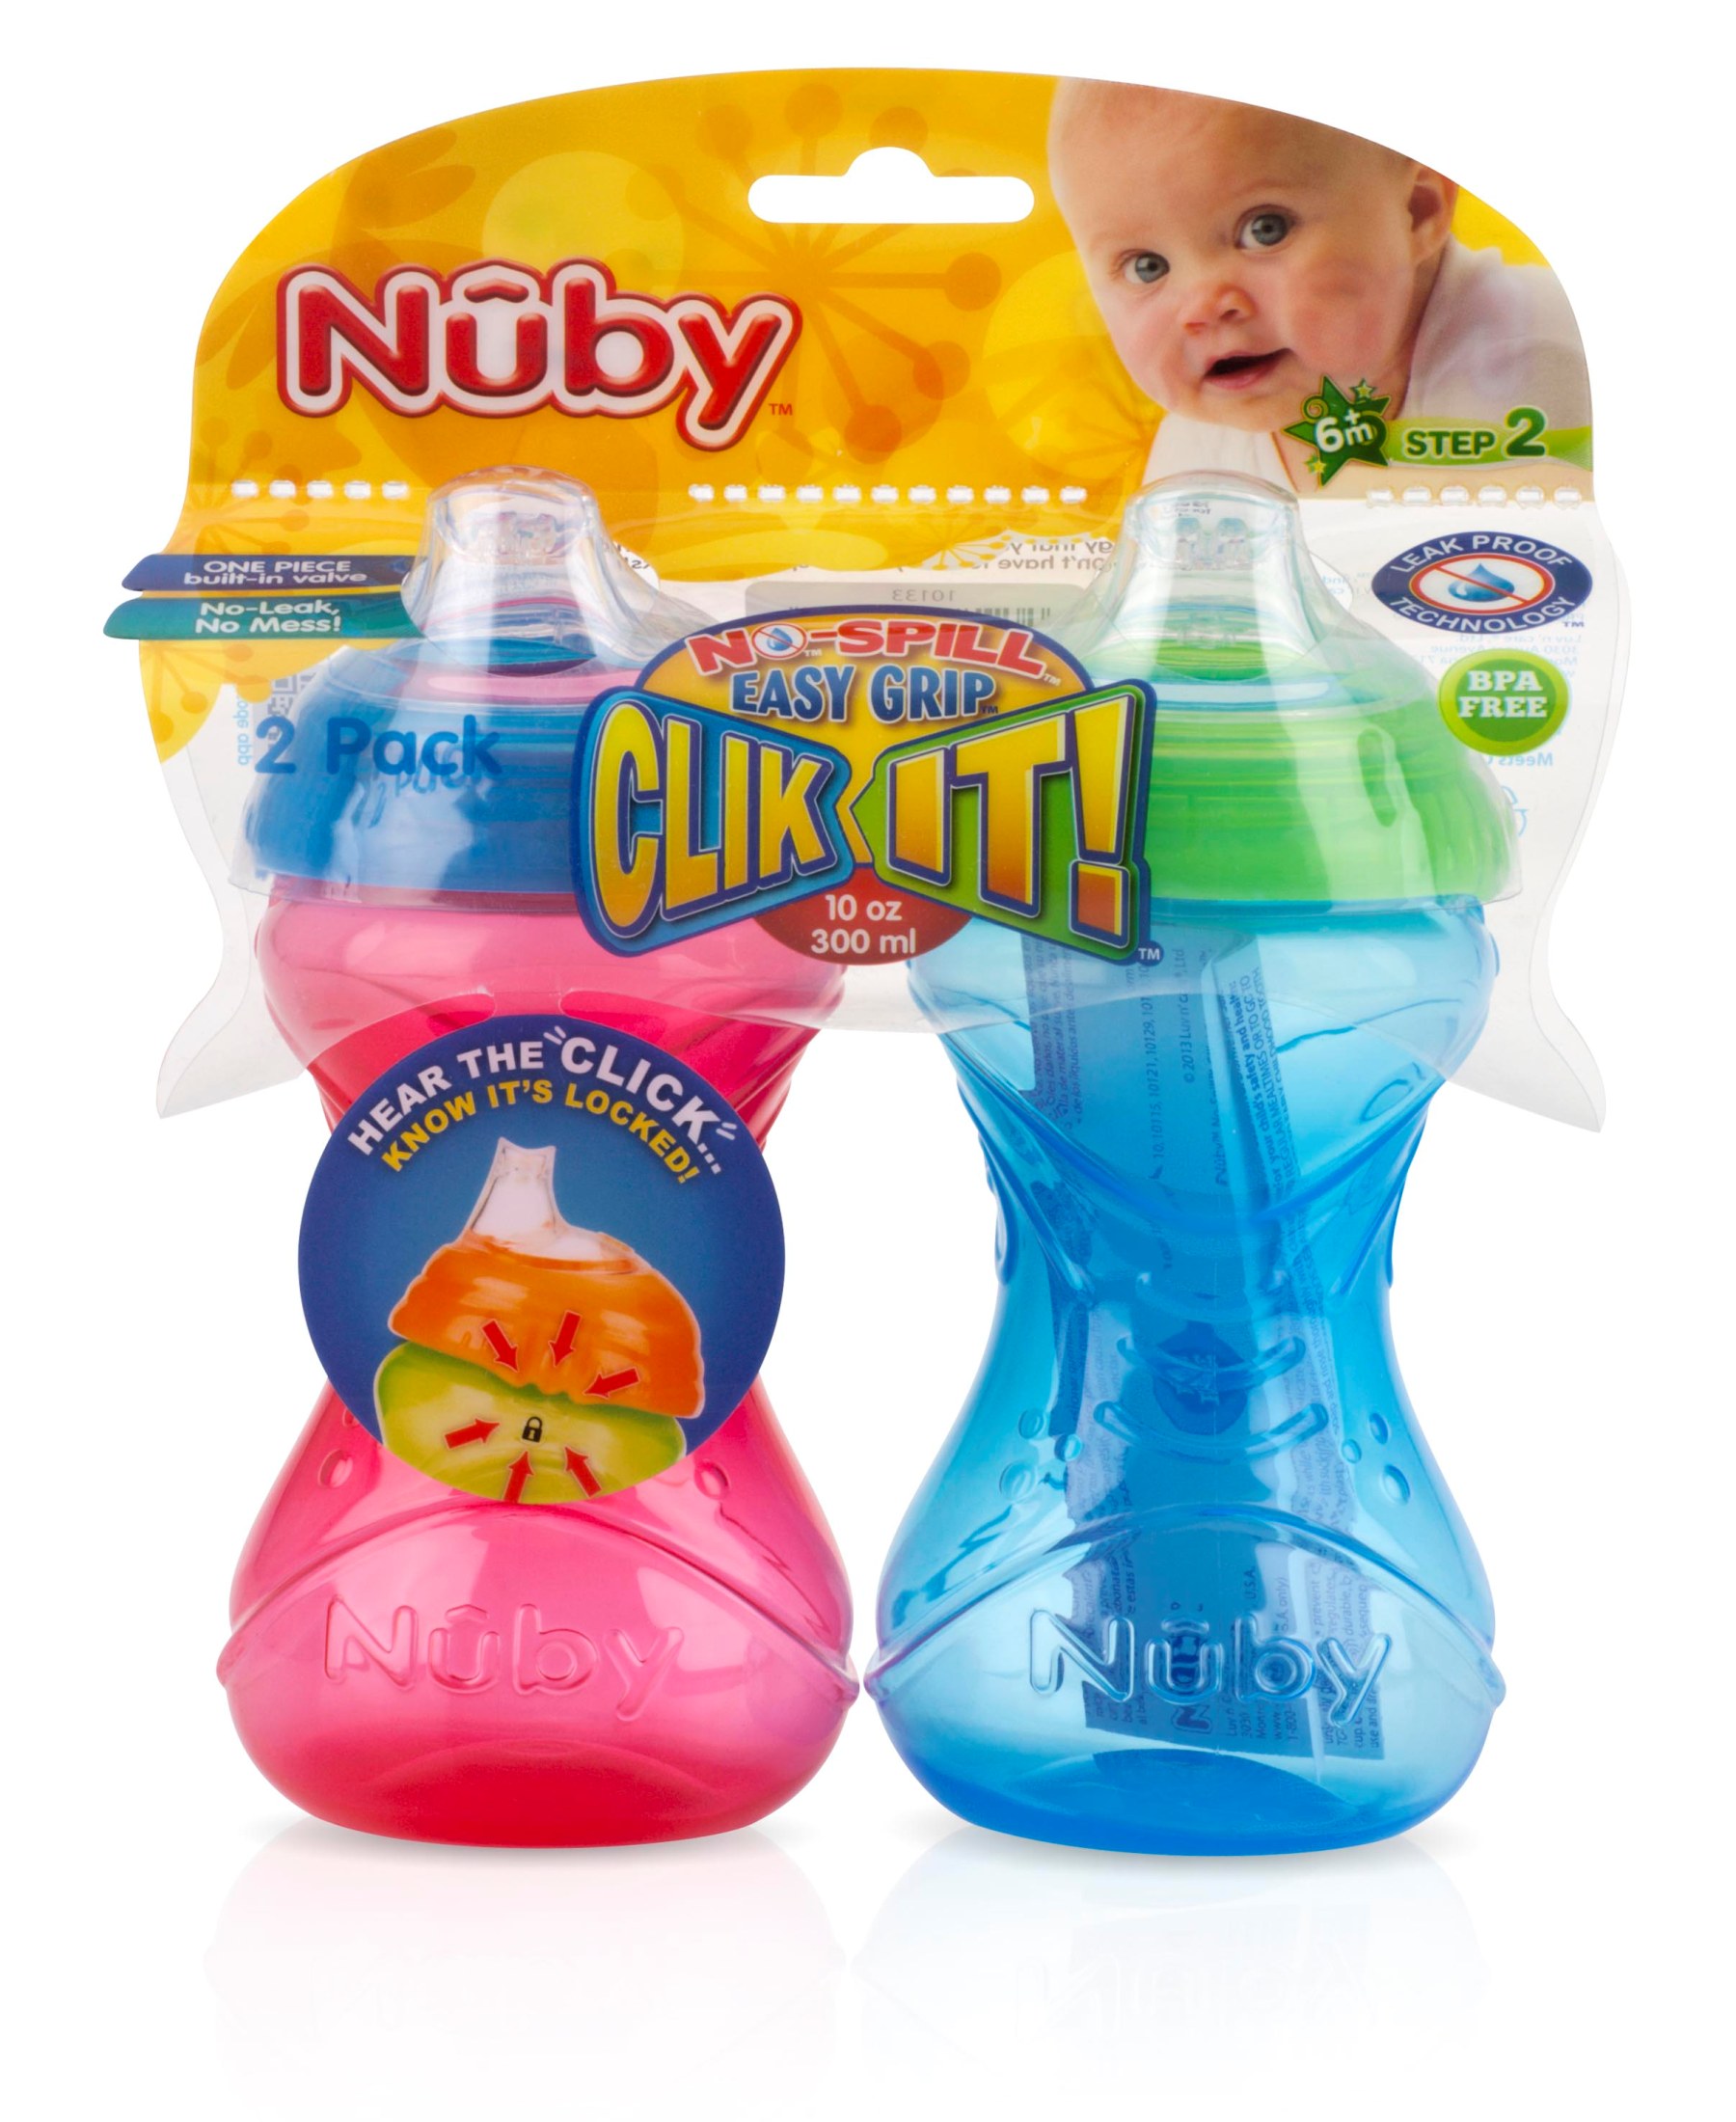 Nuby 2-Pack Clik-It Soft Spout Sippy Cups